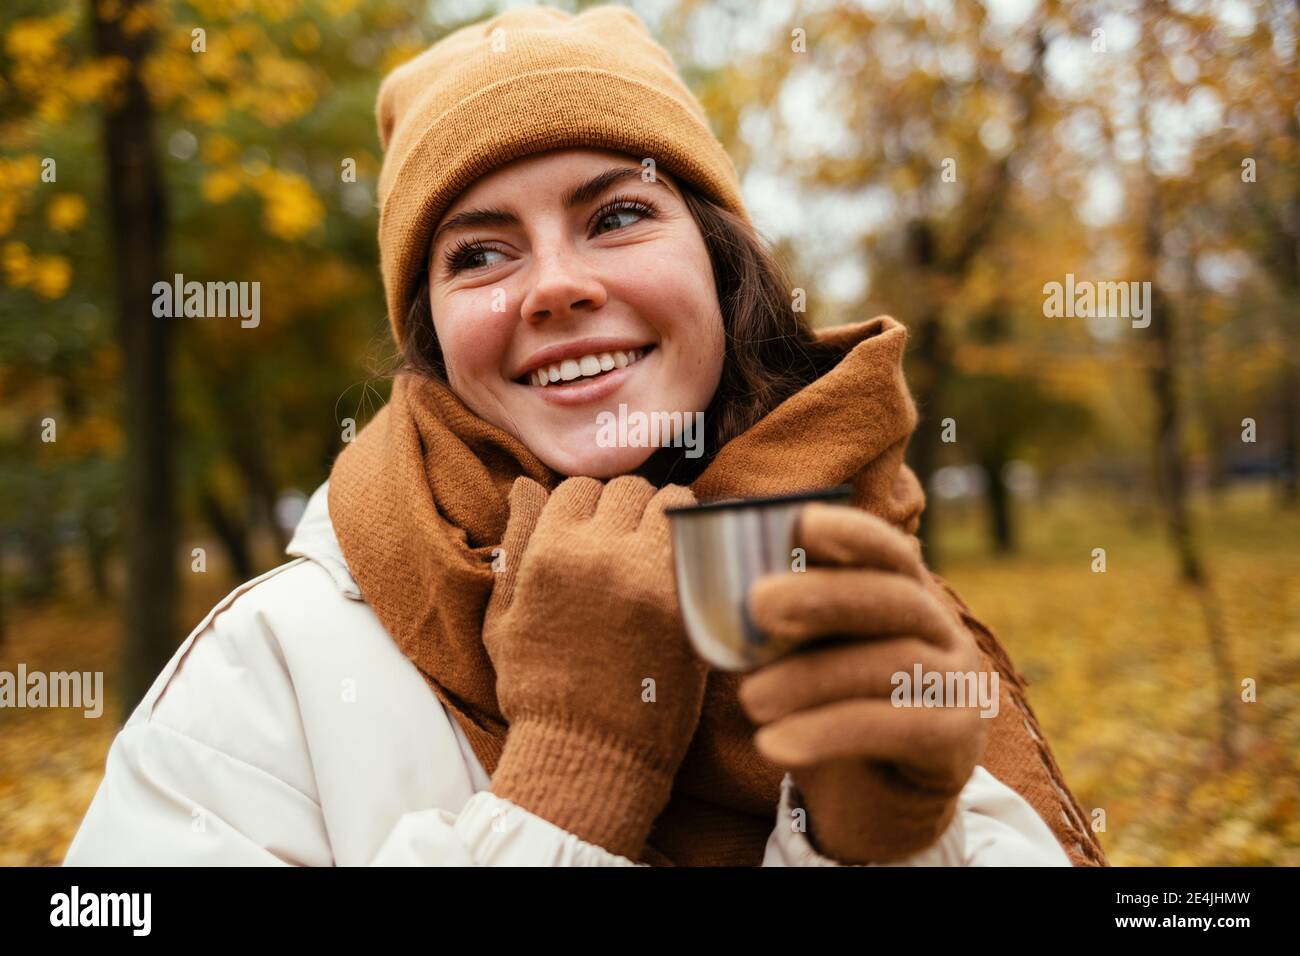 Glückliche junge Frau, die wegschaut, während sie isolierte Tasse in hält Herbstpark Stockfoto